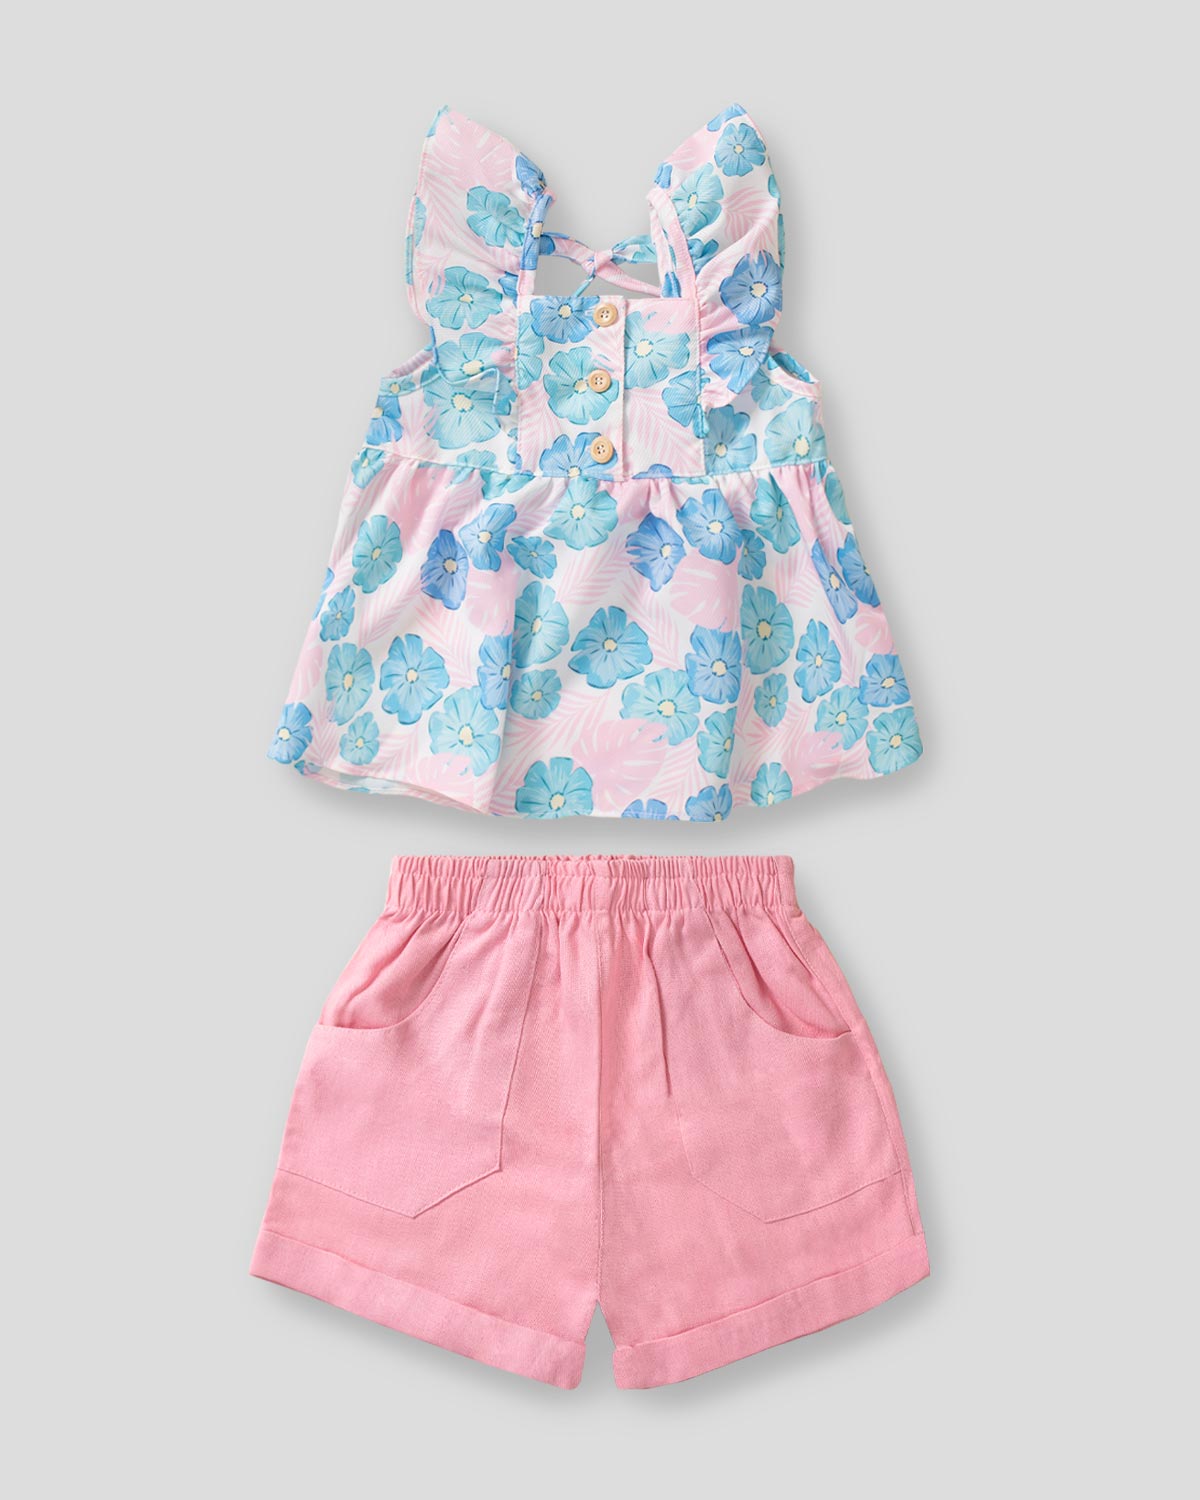 Conjunto blusa de flores con en hombro y short rosa para niña – Cielito